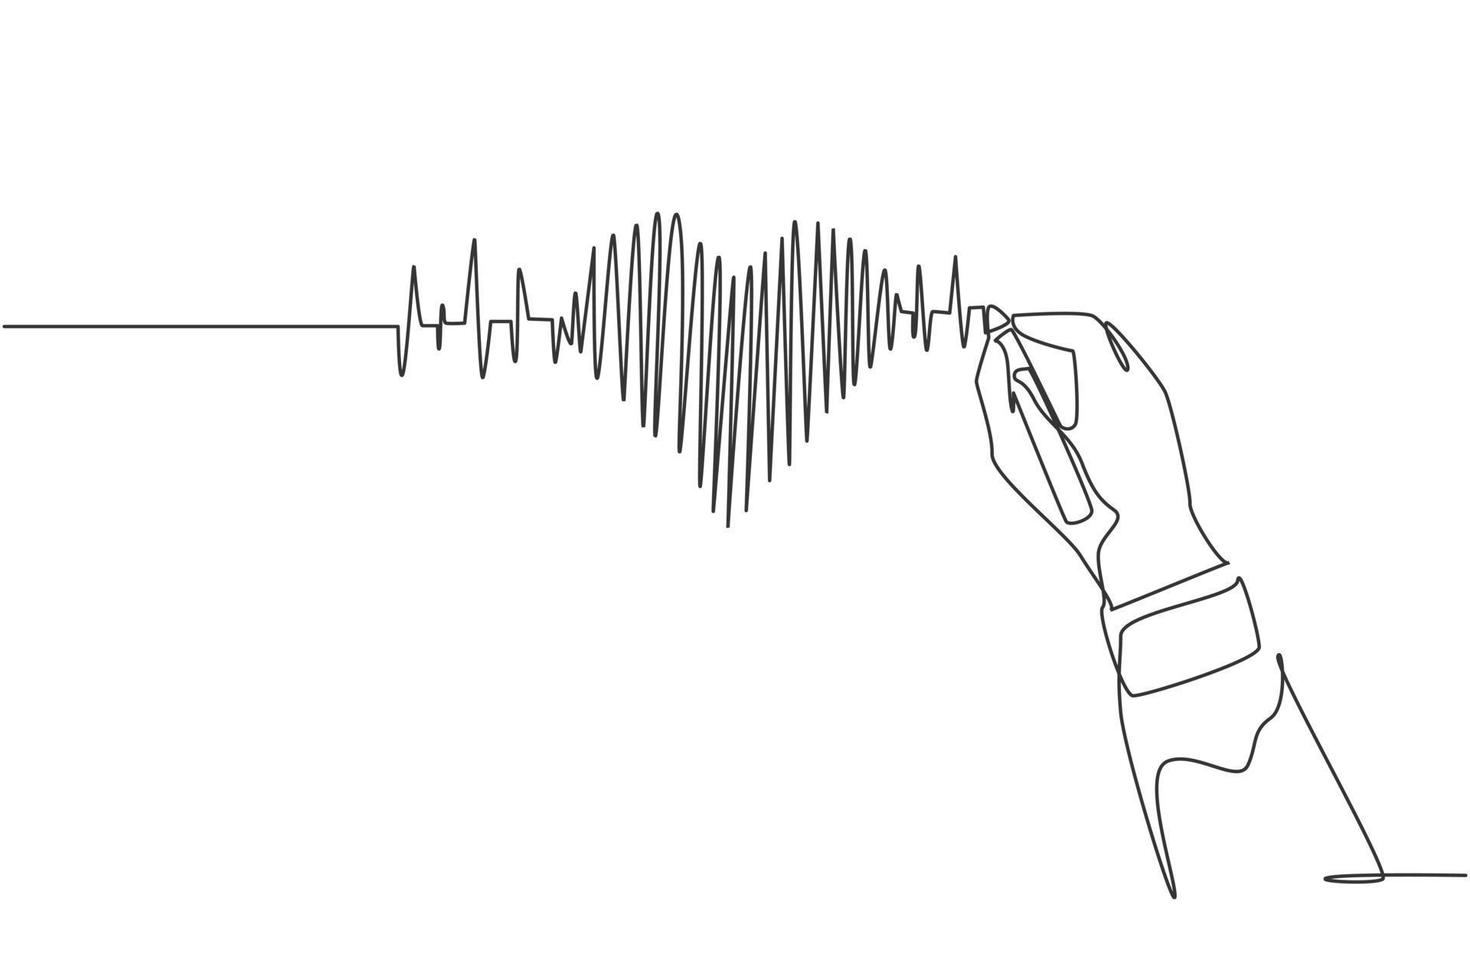 Un dibujo de línea continua de dibujo a mano alzada, imagen de gráfico de pulso de latido de corazón humano en pizarra. moderno concepto de anatomía de atención médica médica. Ilustración de vector de diseño gráfico de dibujo de una sola línea